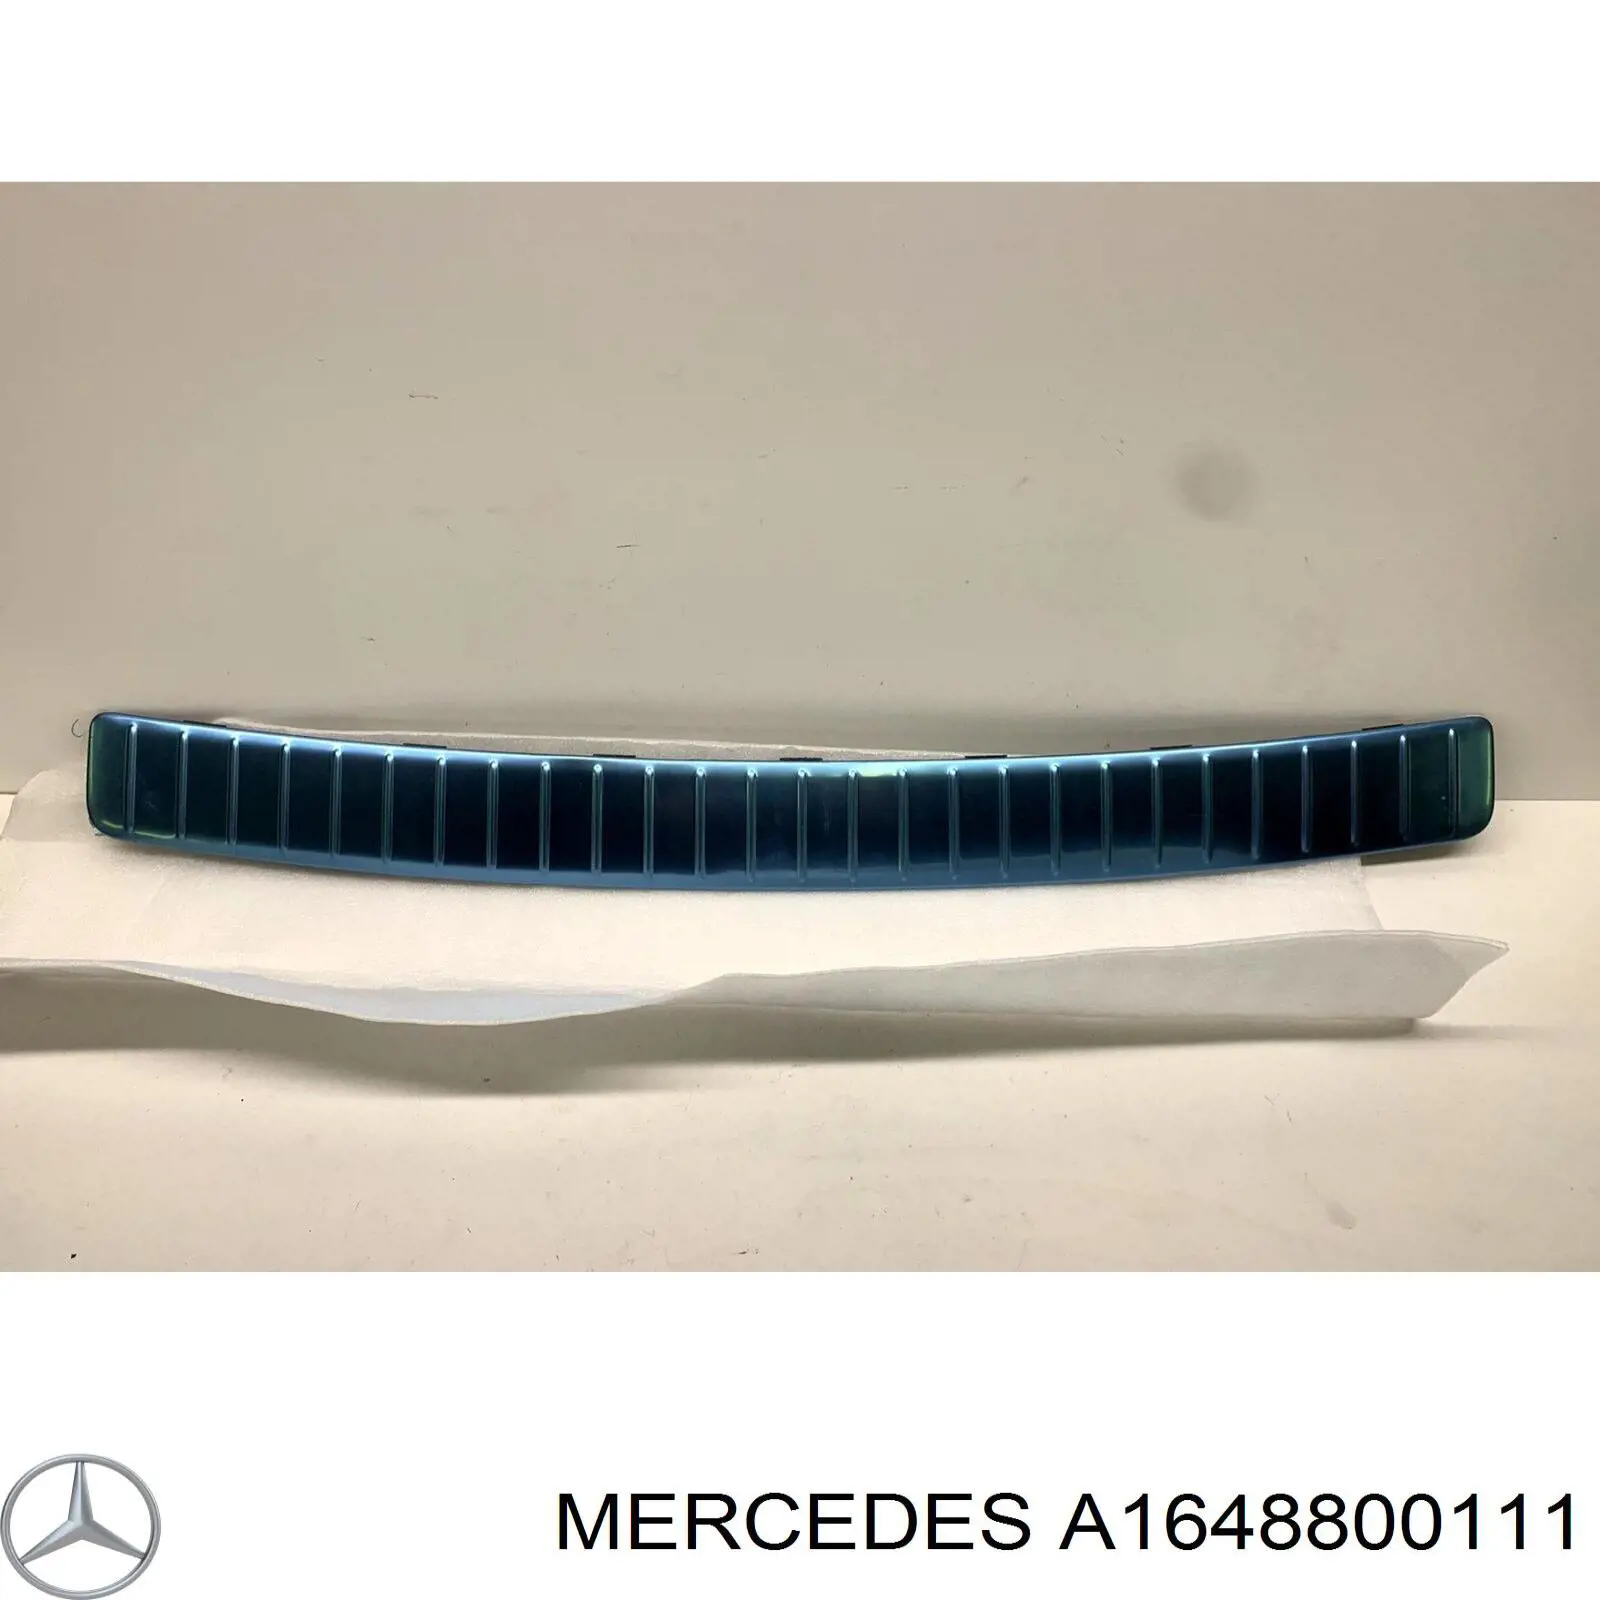 Placa sobreposta do pára-choque traseiro superior de proteção (degrau-grampo dobrável) para Mercedes ML/GLE (W164)